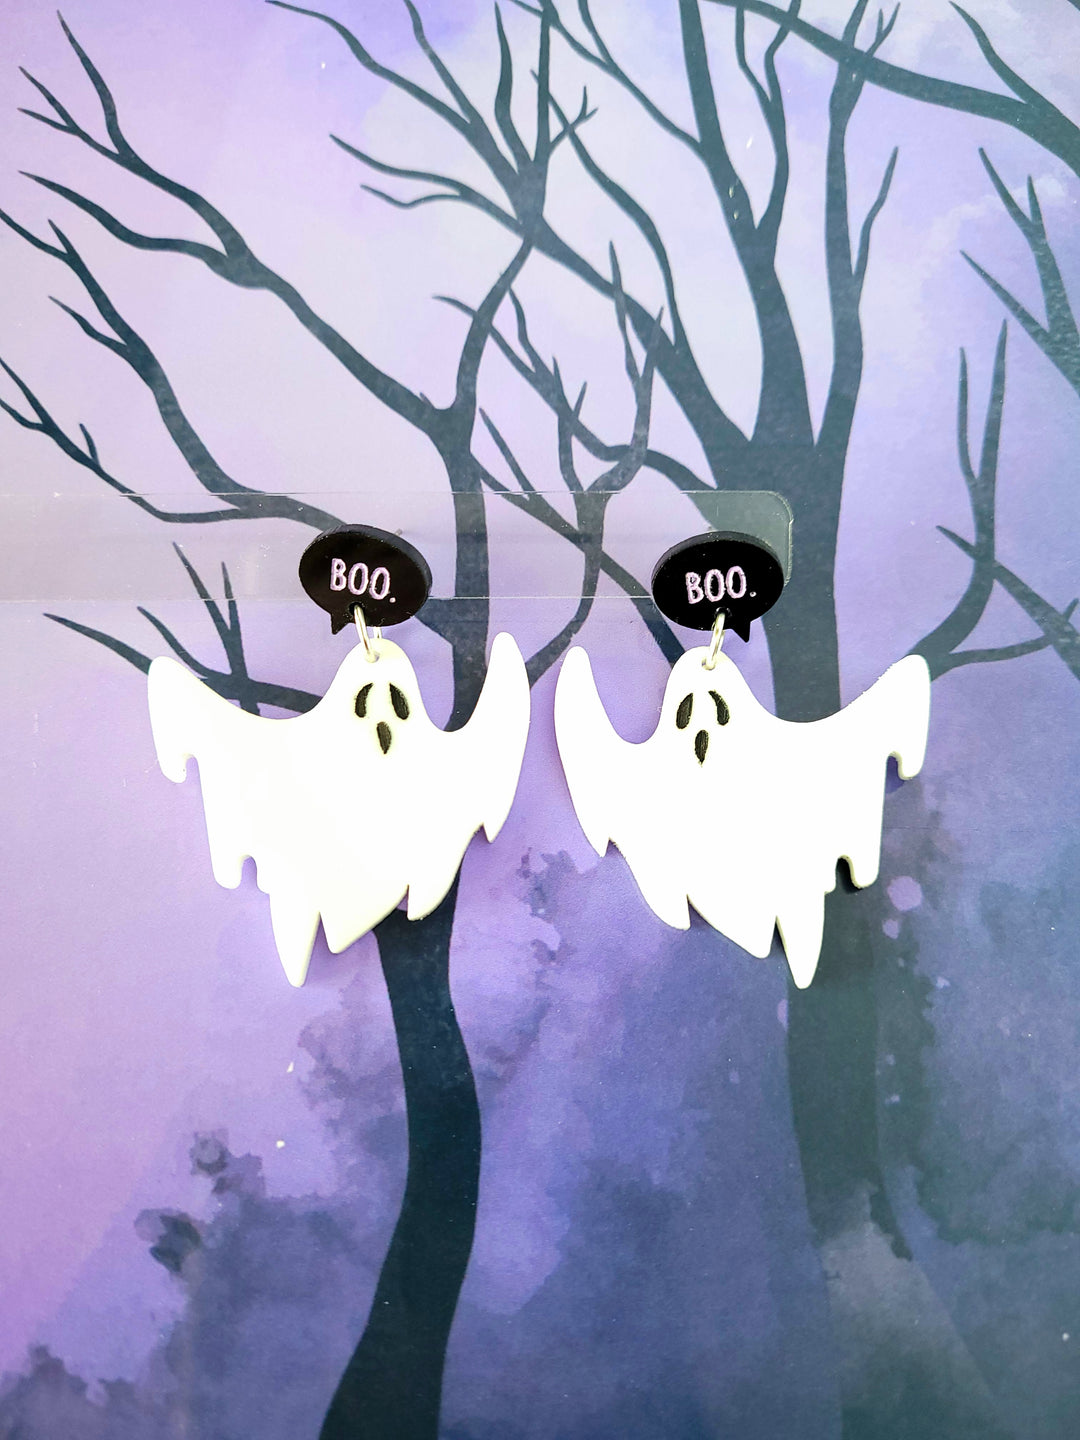 Boo Ghost Earrings